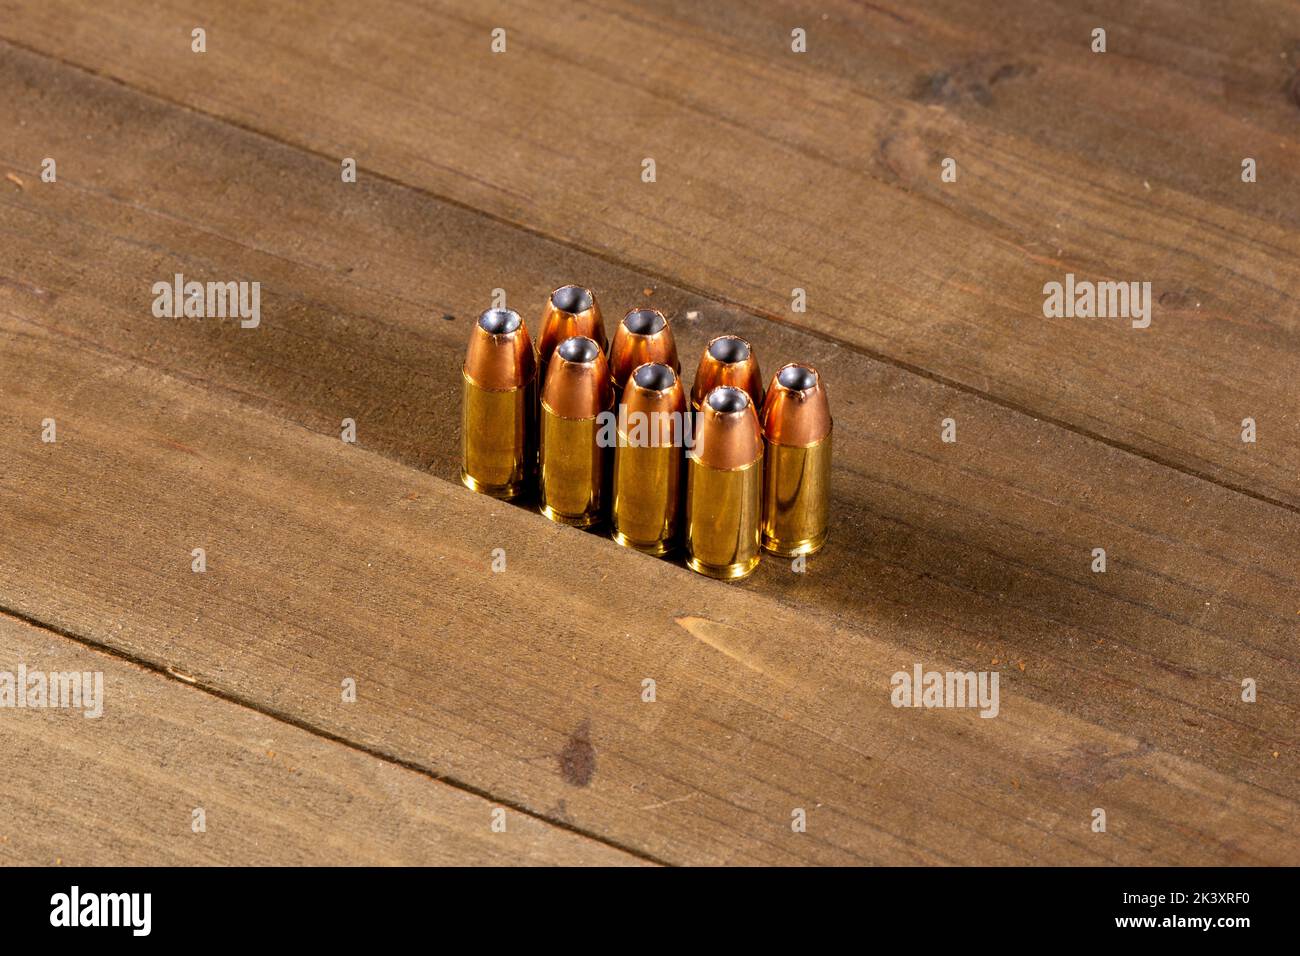 9 Millimetermunition auf dem Tisch Stockfoto